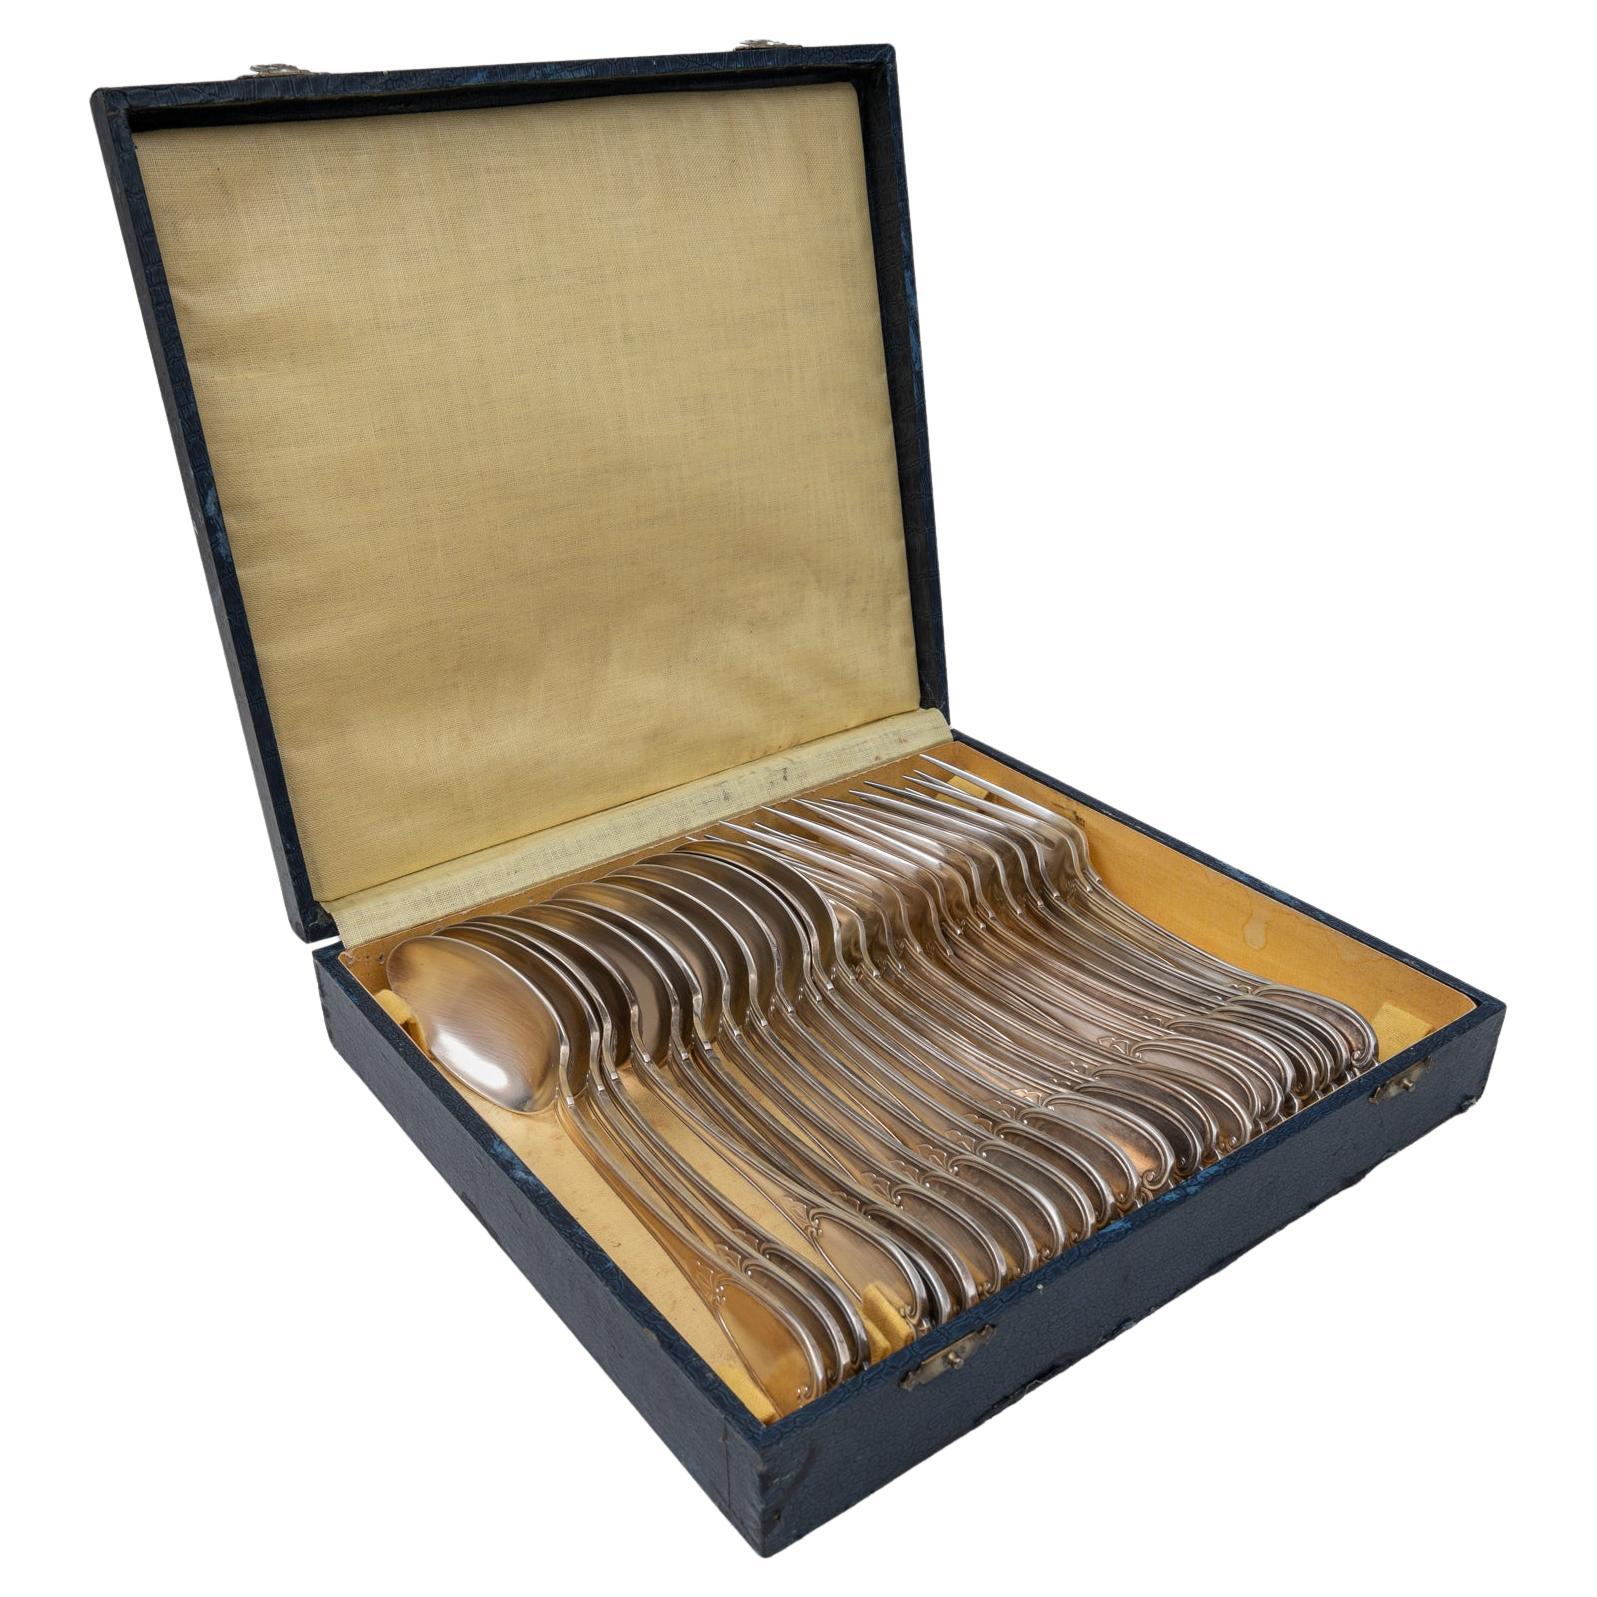 Set de cuillères et de fourchettes belge du début du 20e siècle dans une boîte en bois